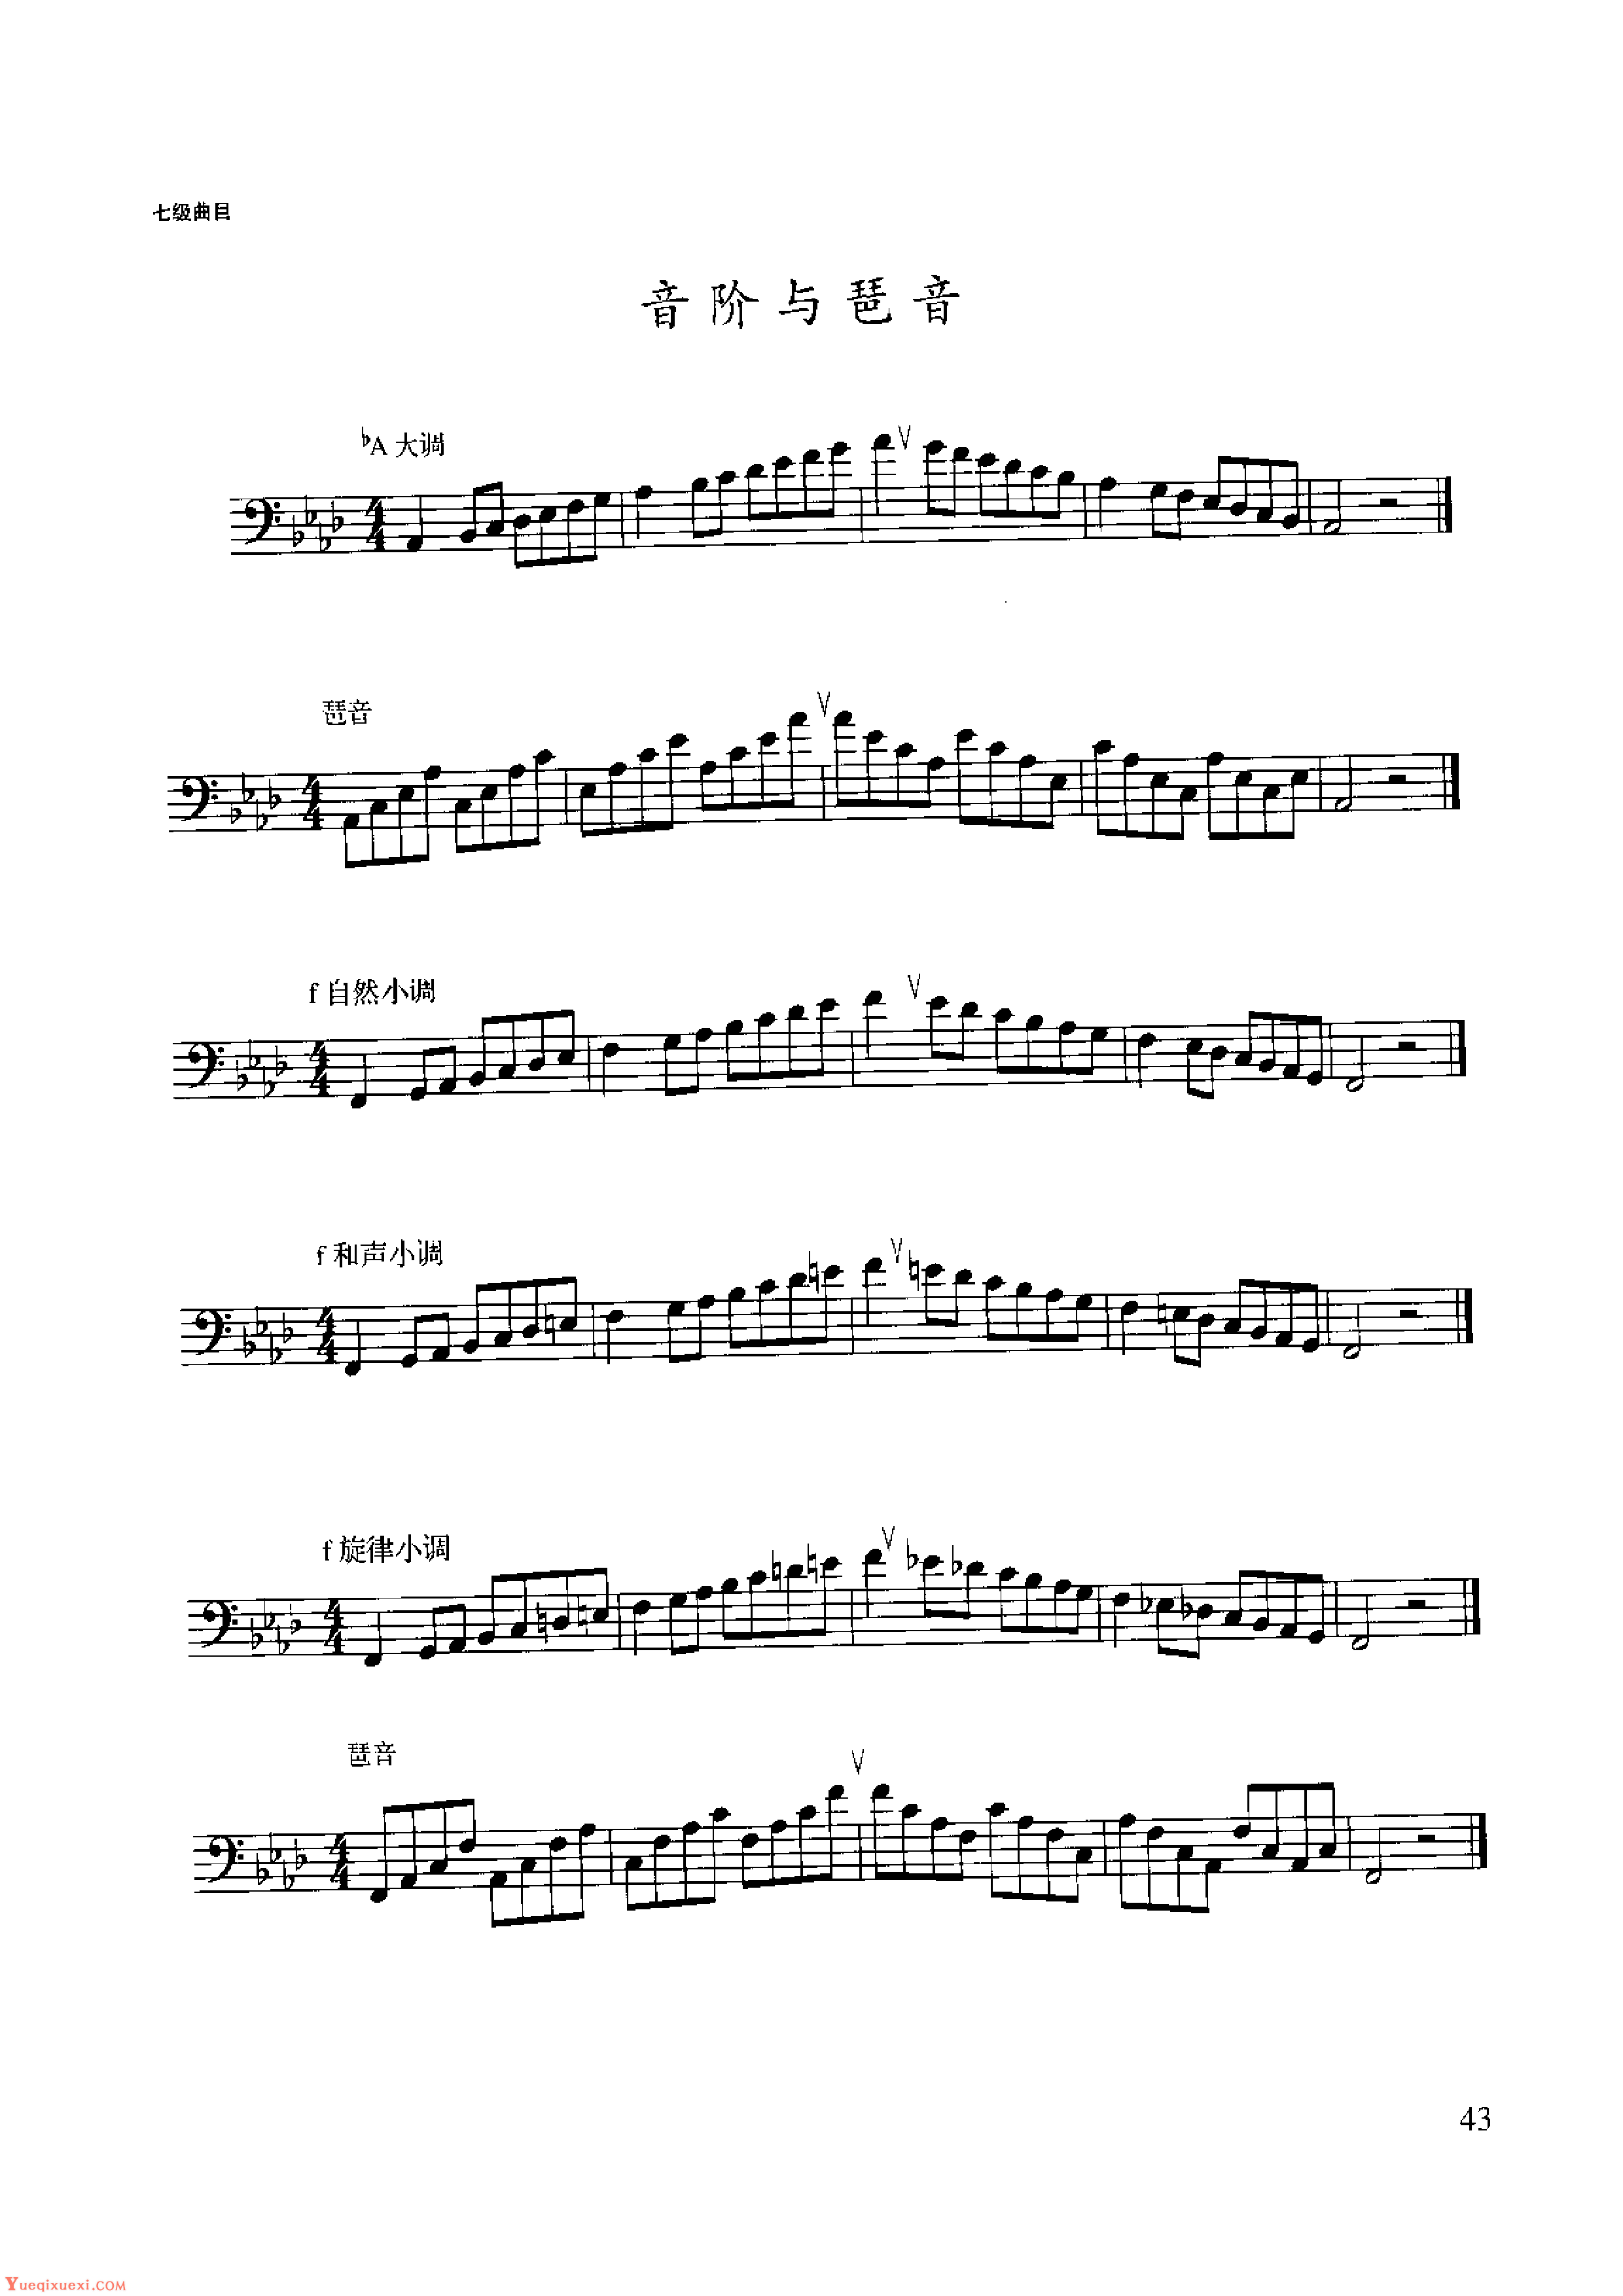 长号考级曲集:七级【bA大调 f小调】音阶与琶音练习曲